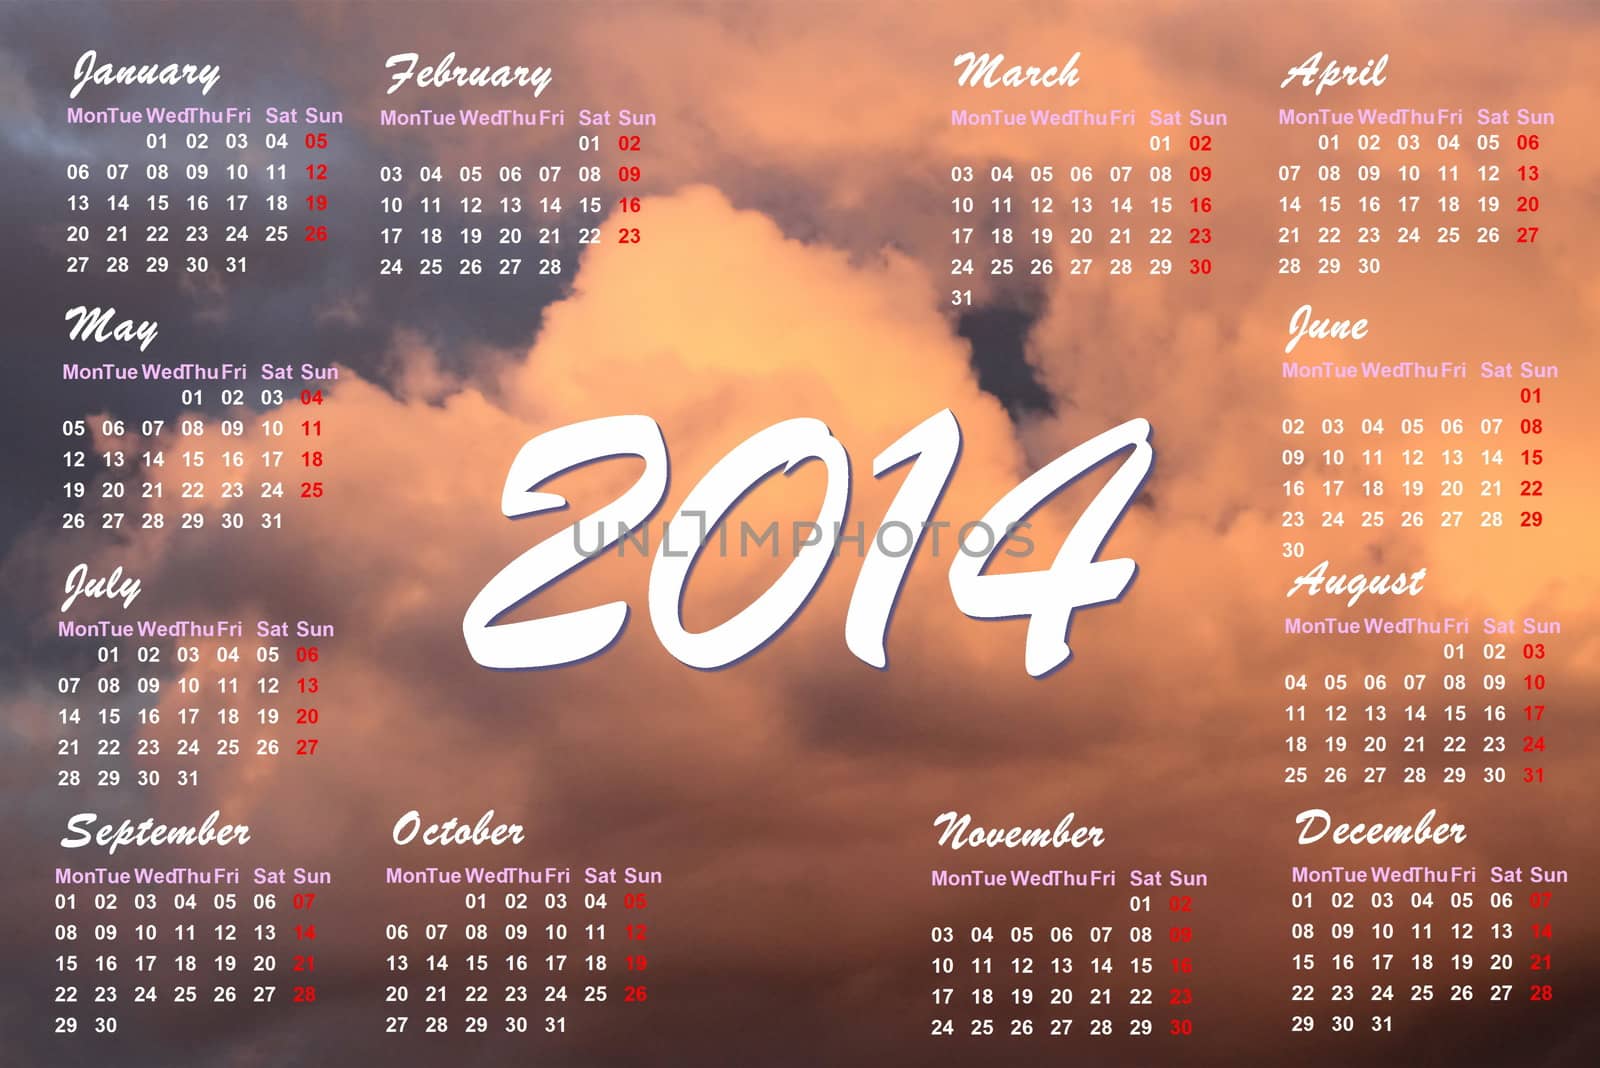 Sunset clouds 2014 calendar - 3D render by Elenaphotos21